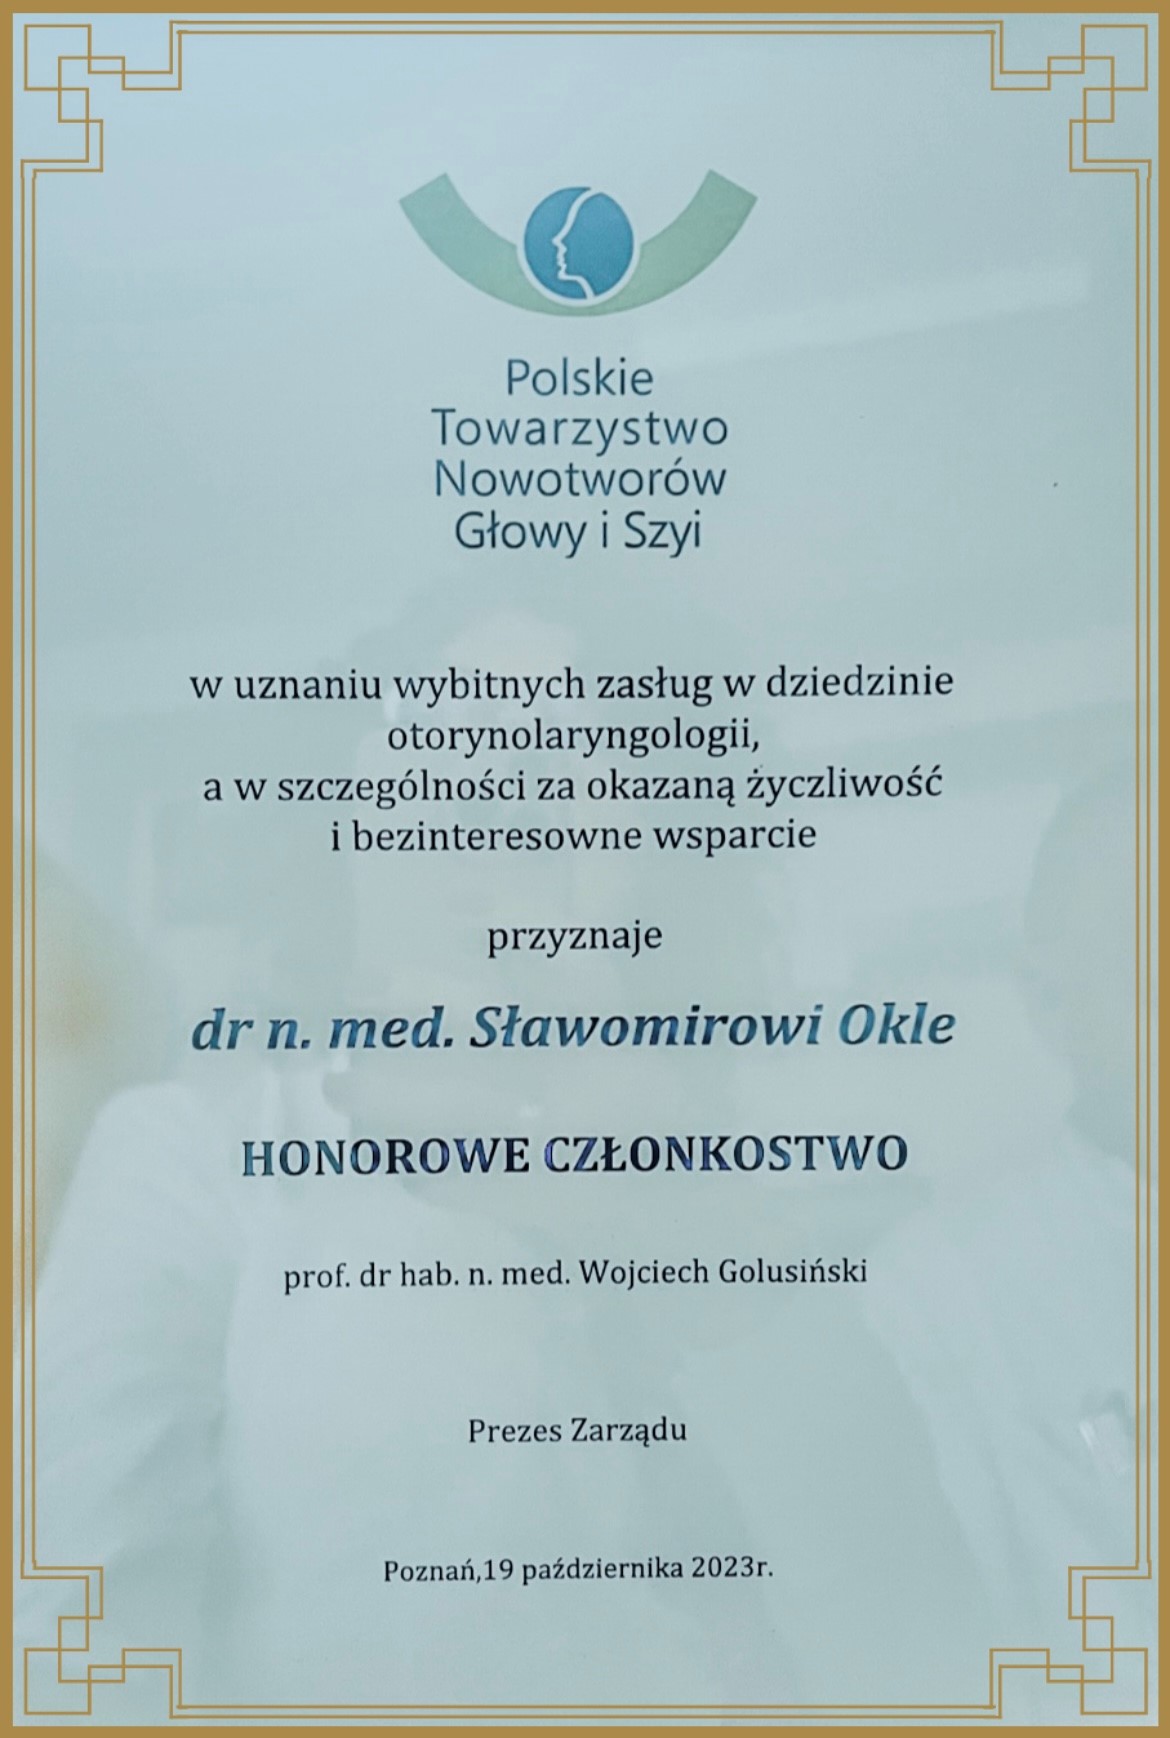 Fot. archiwum prywatne Sławomira Okły